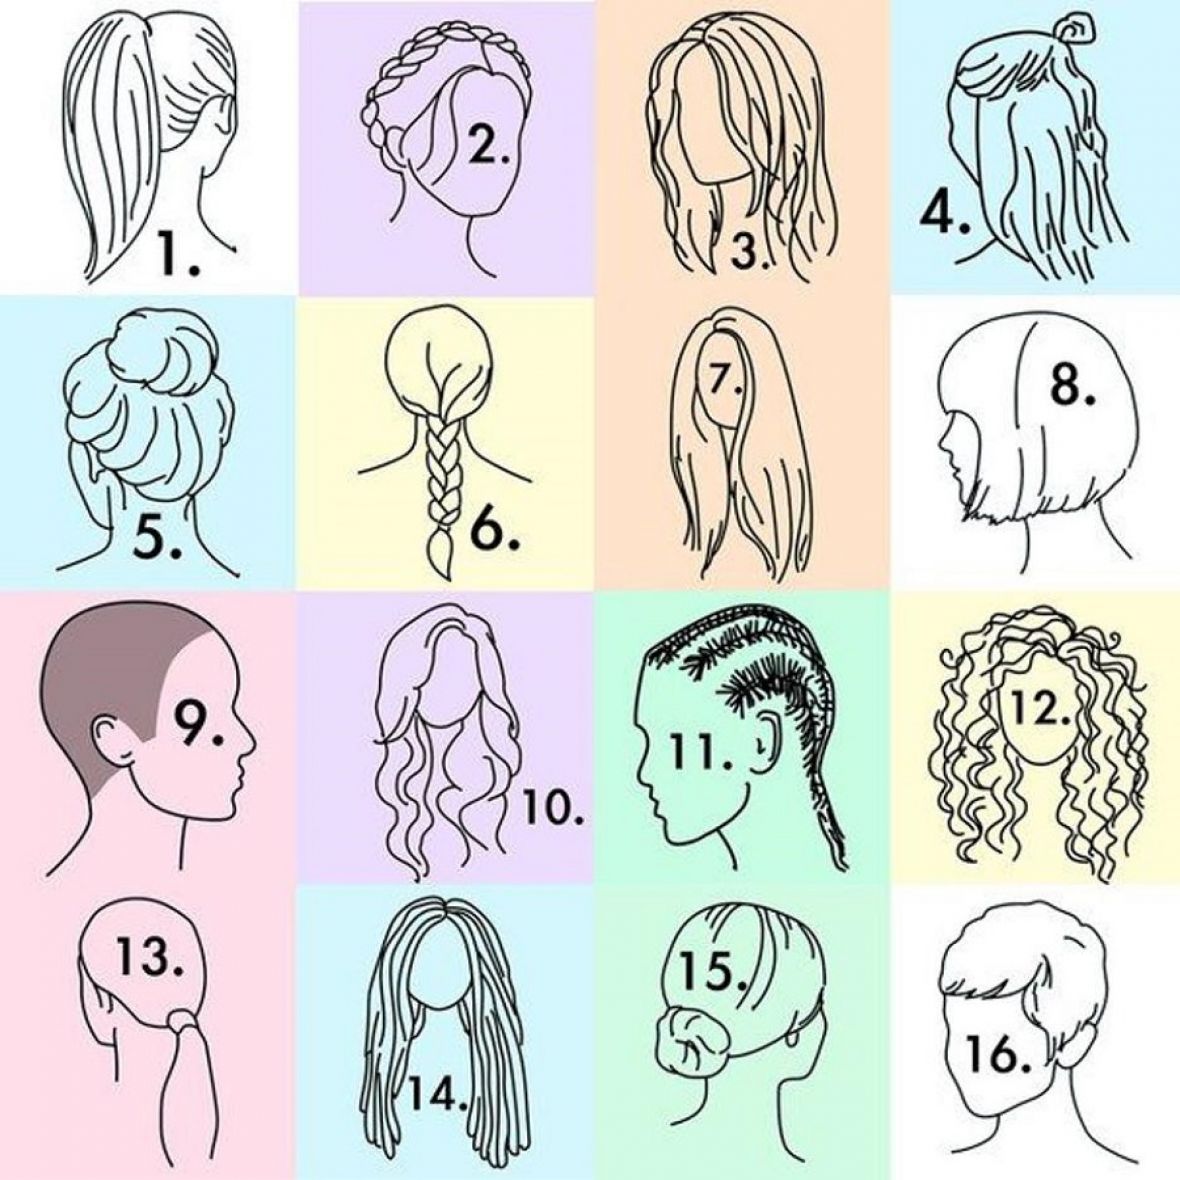 Primjeri frizura kod žena - undefined